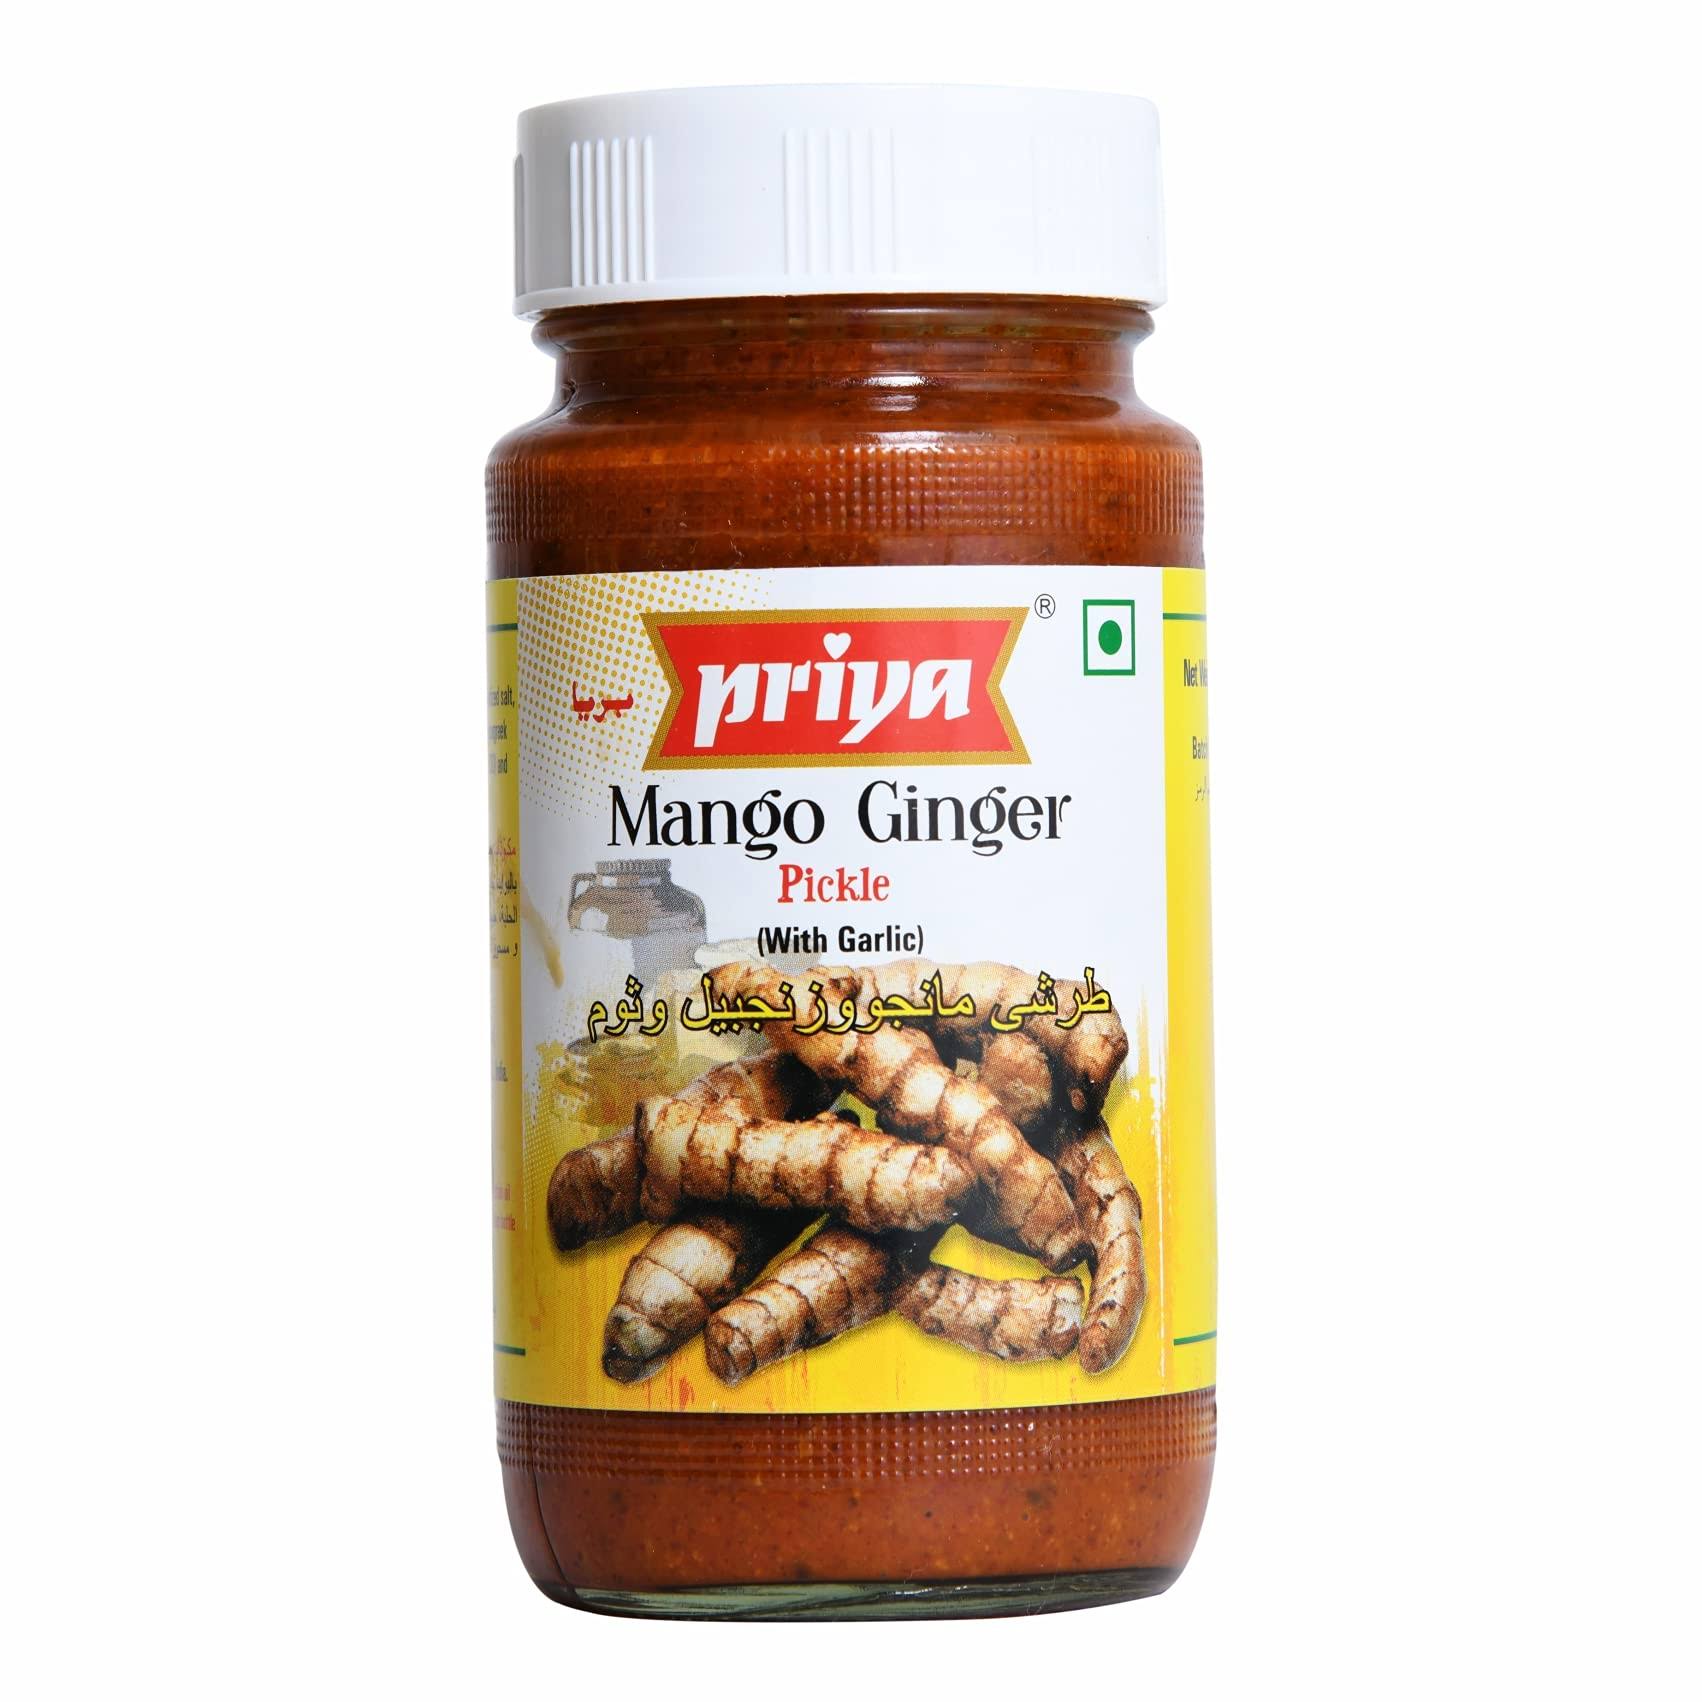 Priya Mango Ginger Pickle with Garlic - 300g